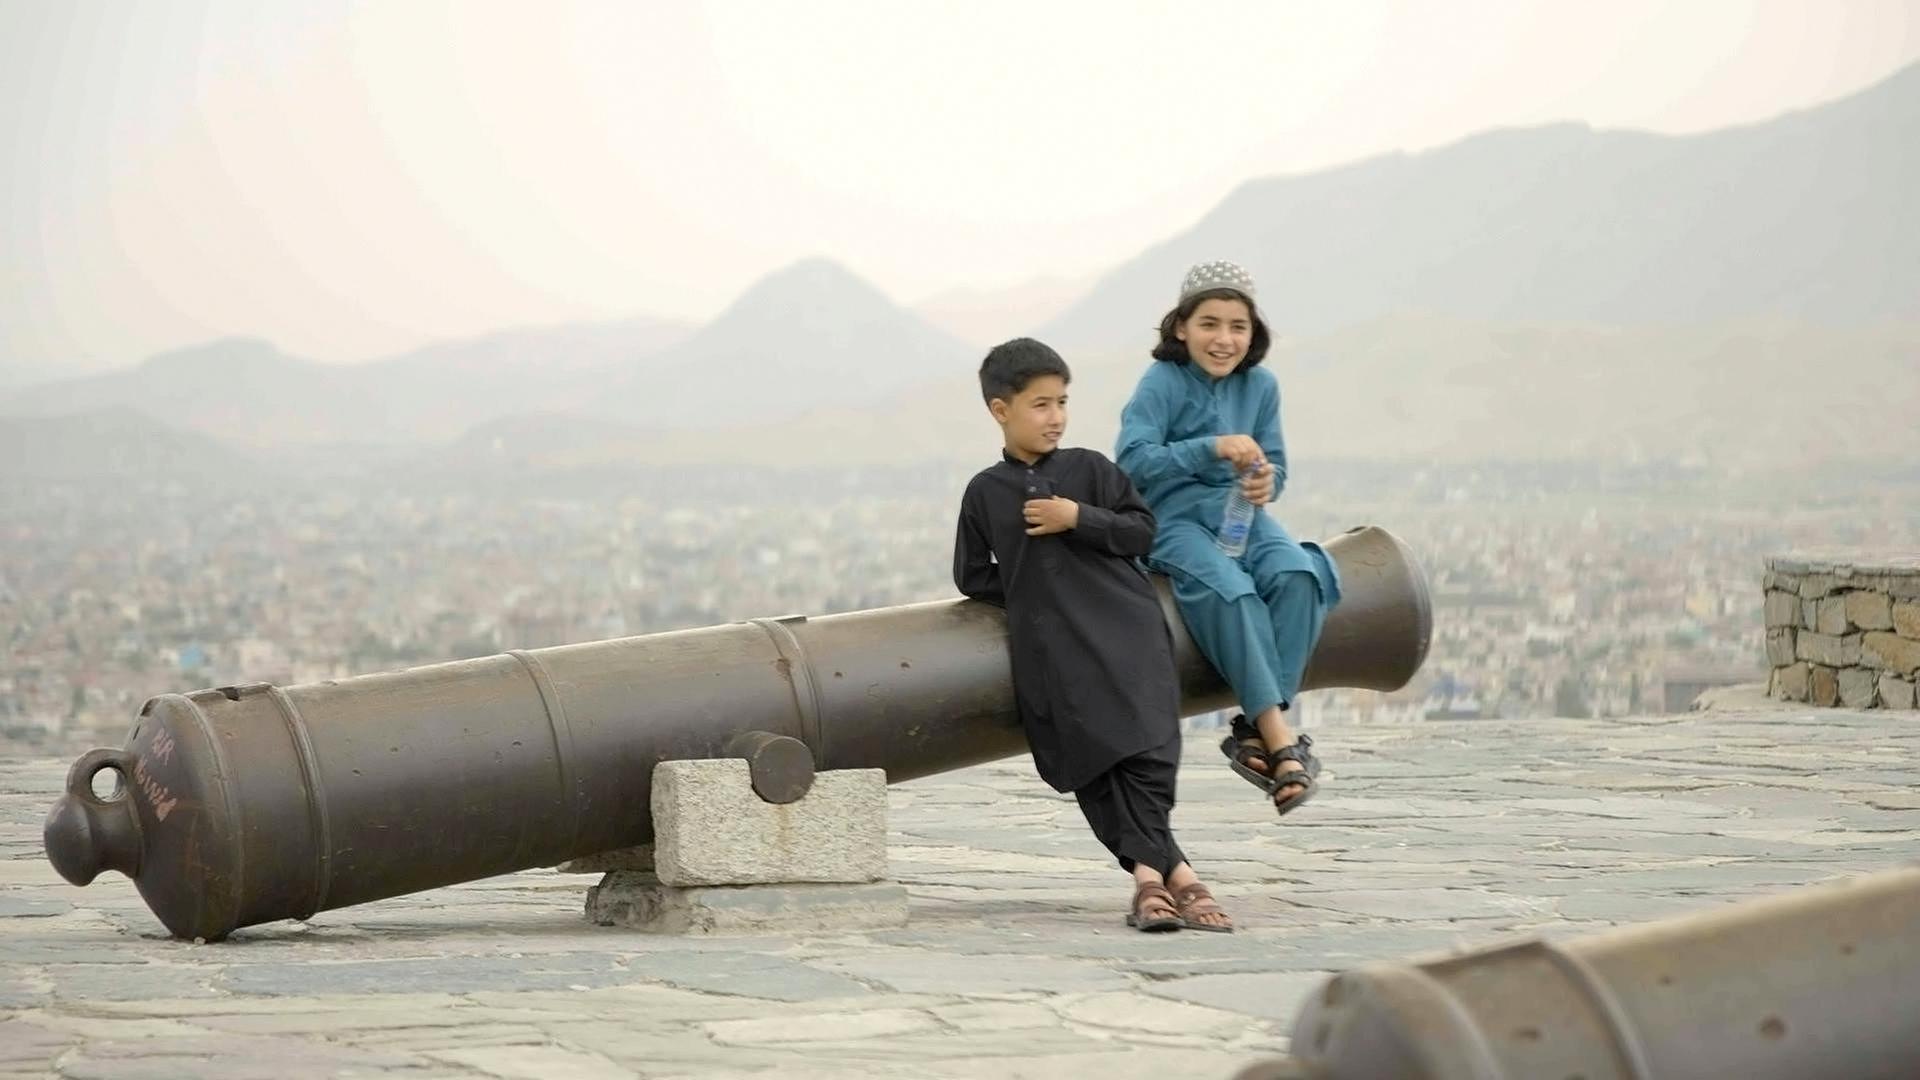 Bild aus der Doku "Die Kinder der Taliban" - zwei Kinder auf einer Kanone